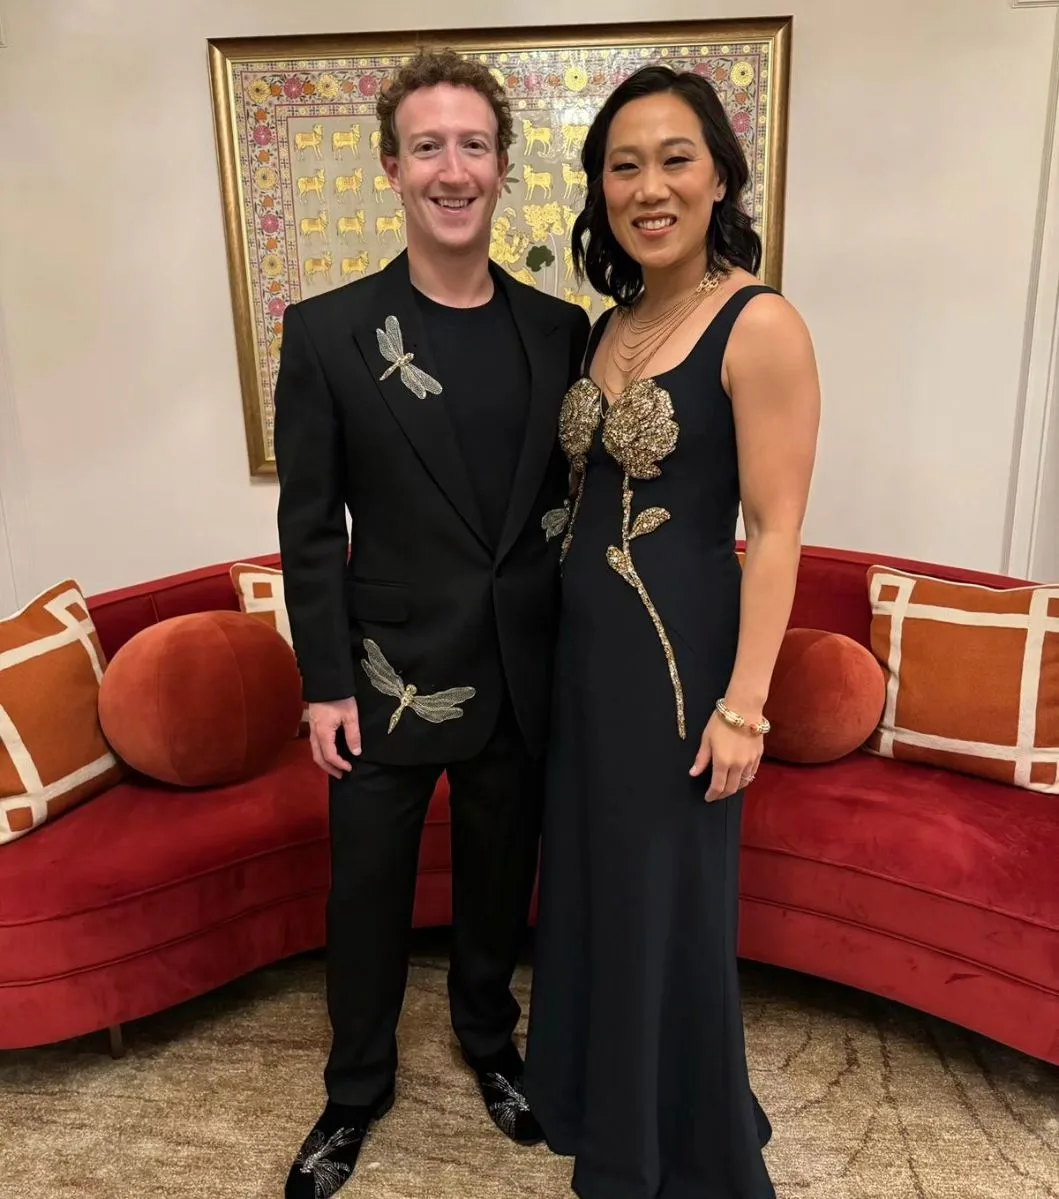 CEO Mark Zuckerberg and his wife Priscilla Chan